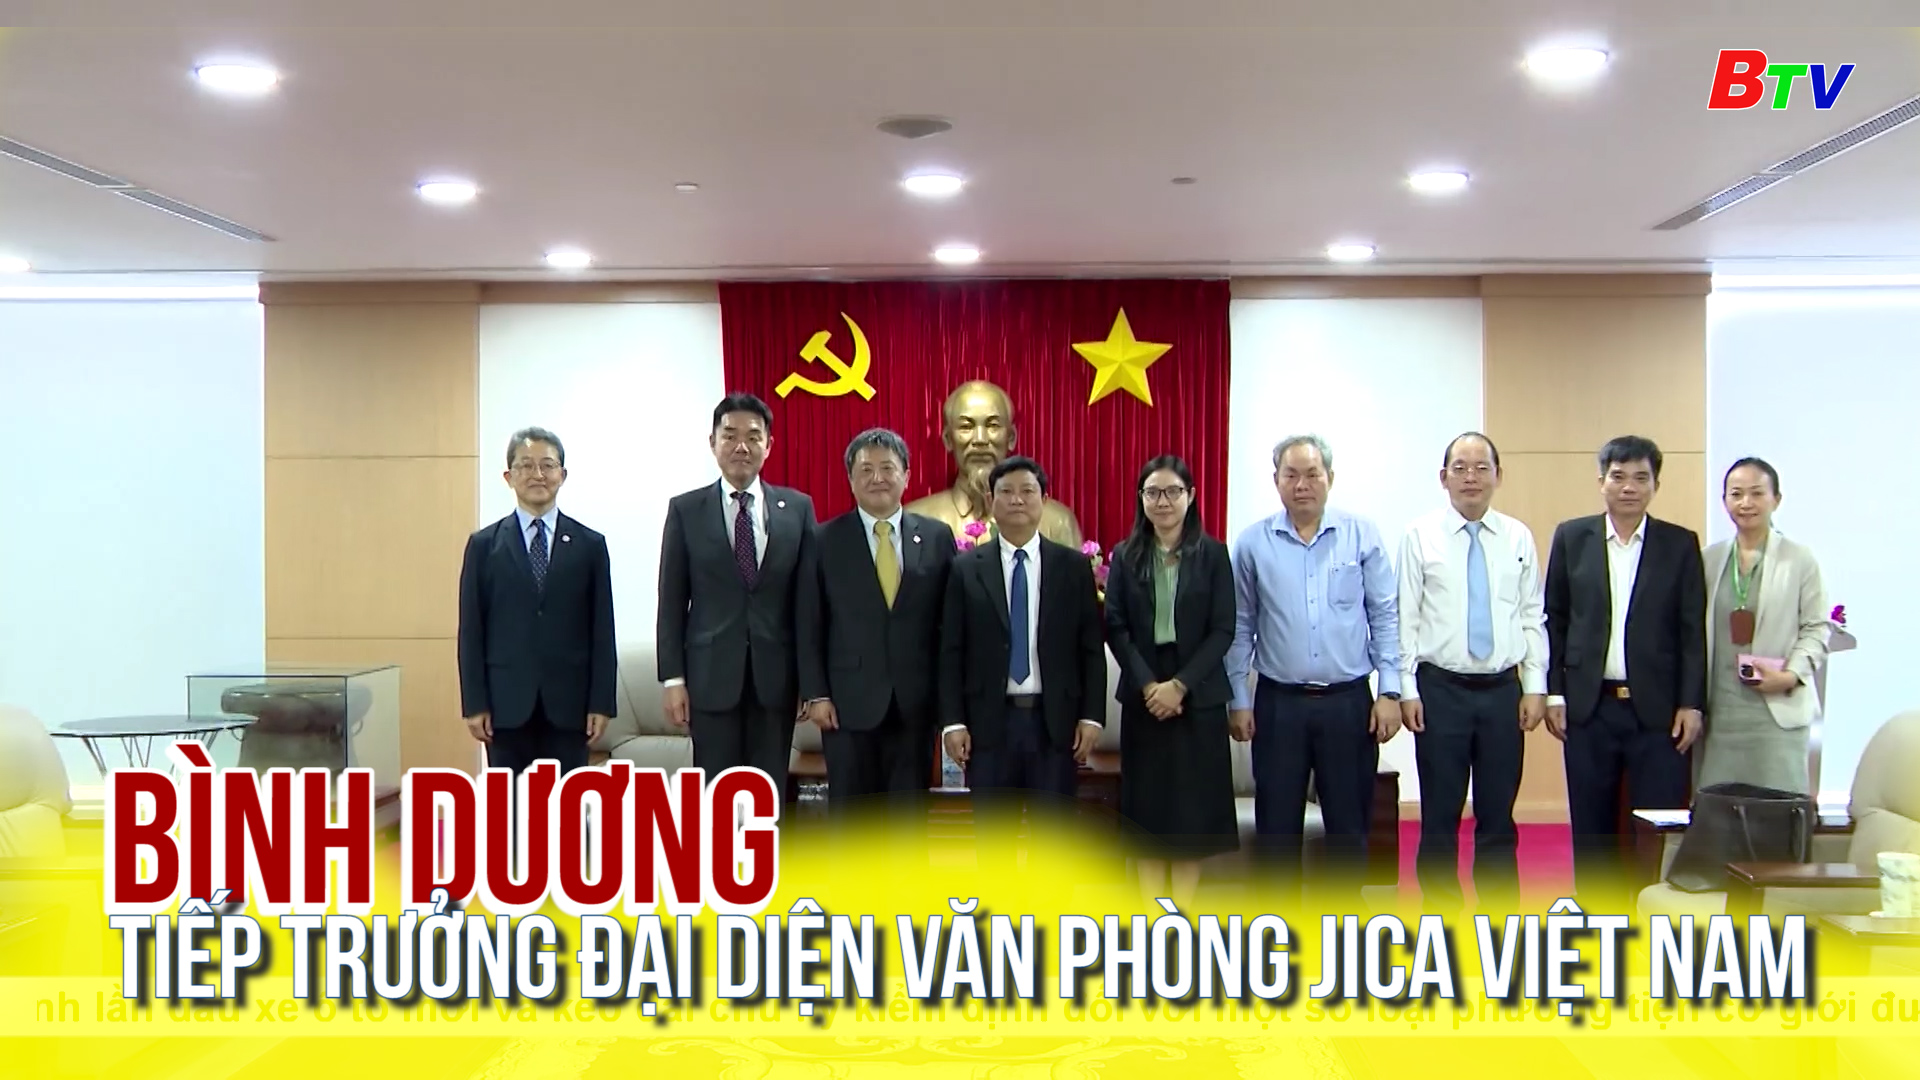 Bình Dương tiếp trưởng đại diện văn phòng Jica Việt Nam